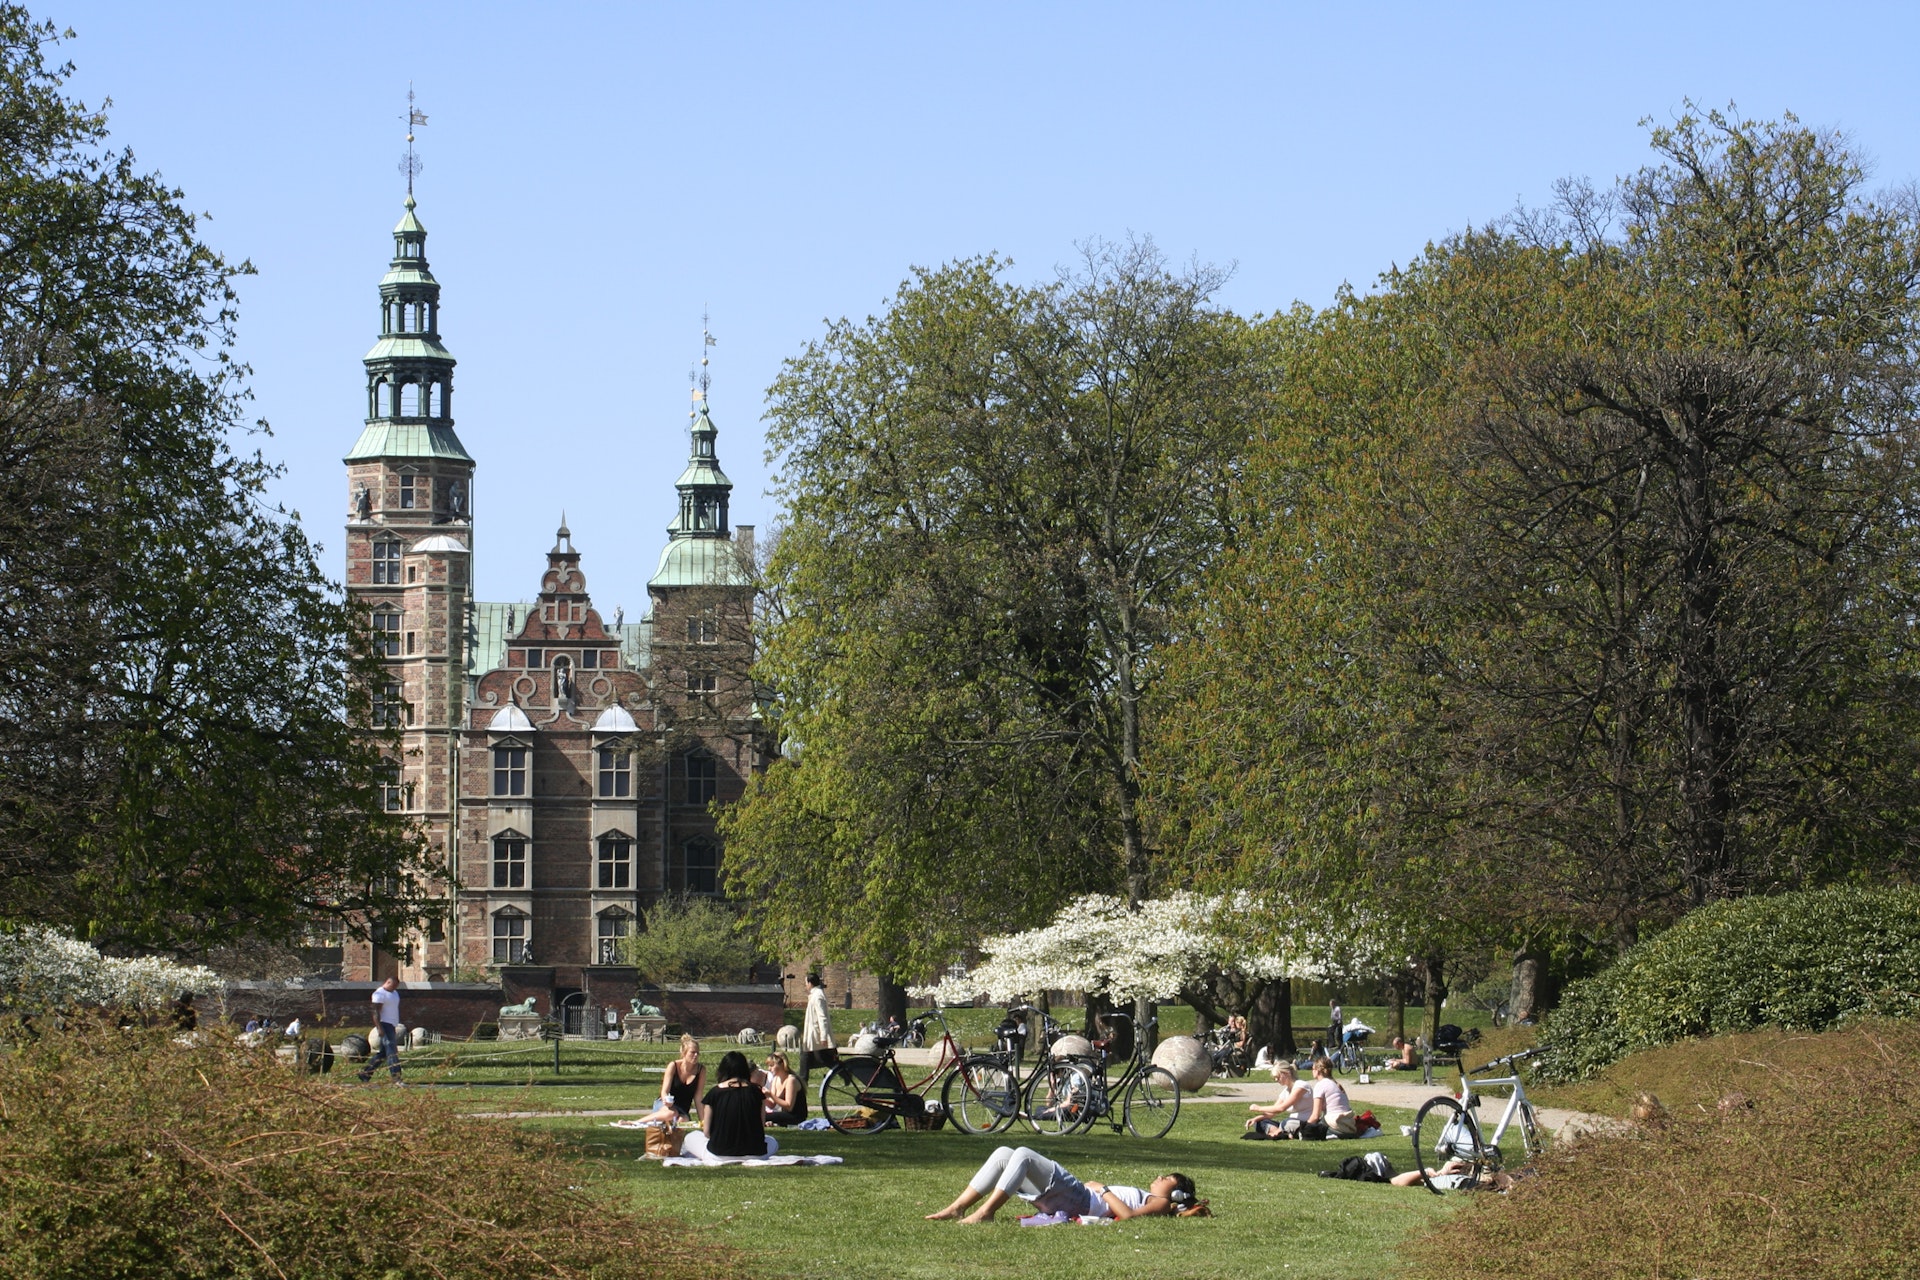  La plej bonaj kvartaloj en Kopenhago por trovi vian hygge